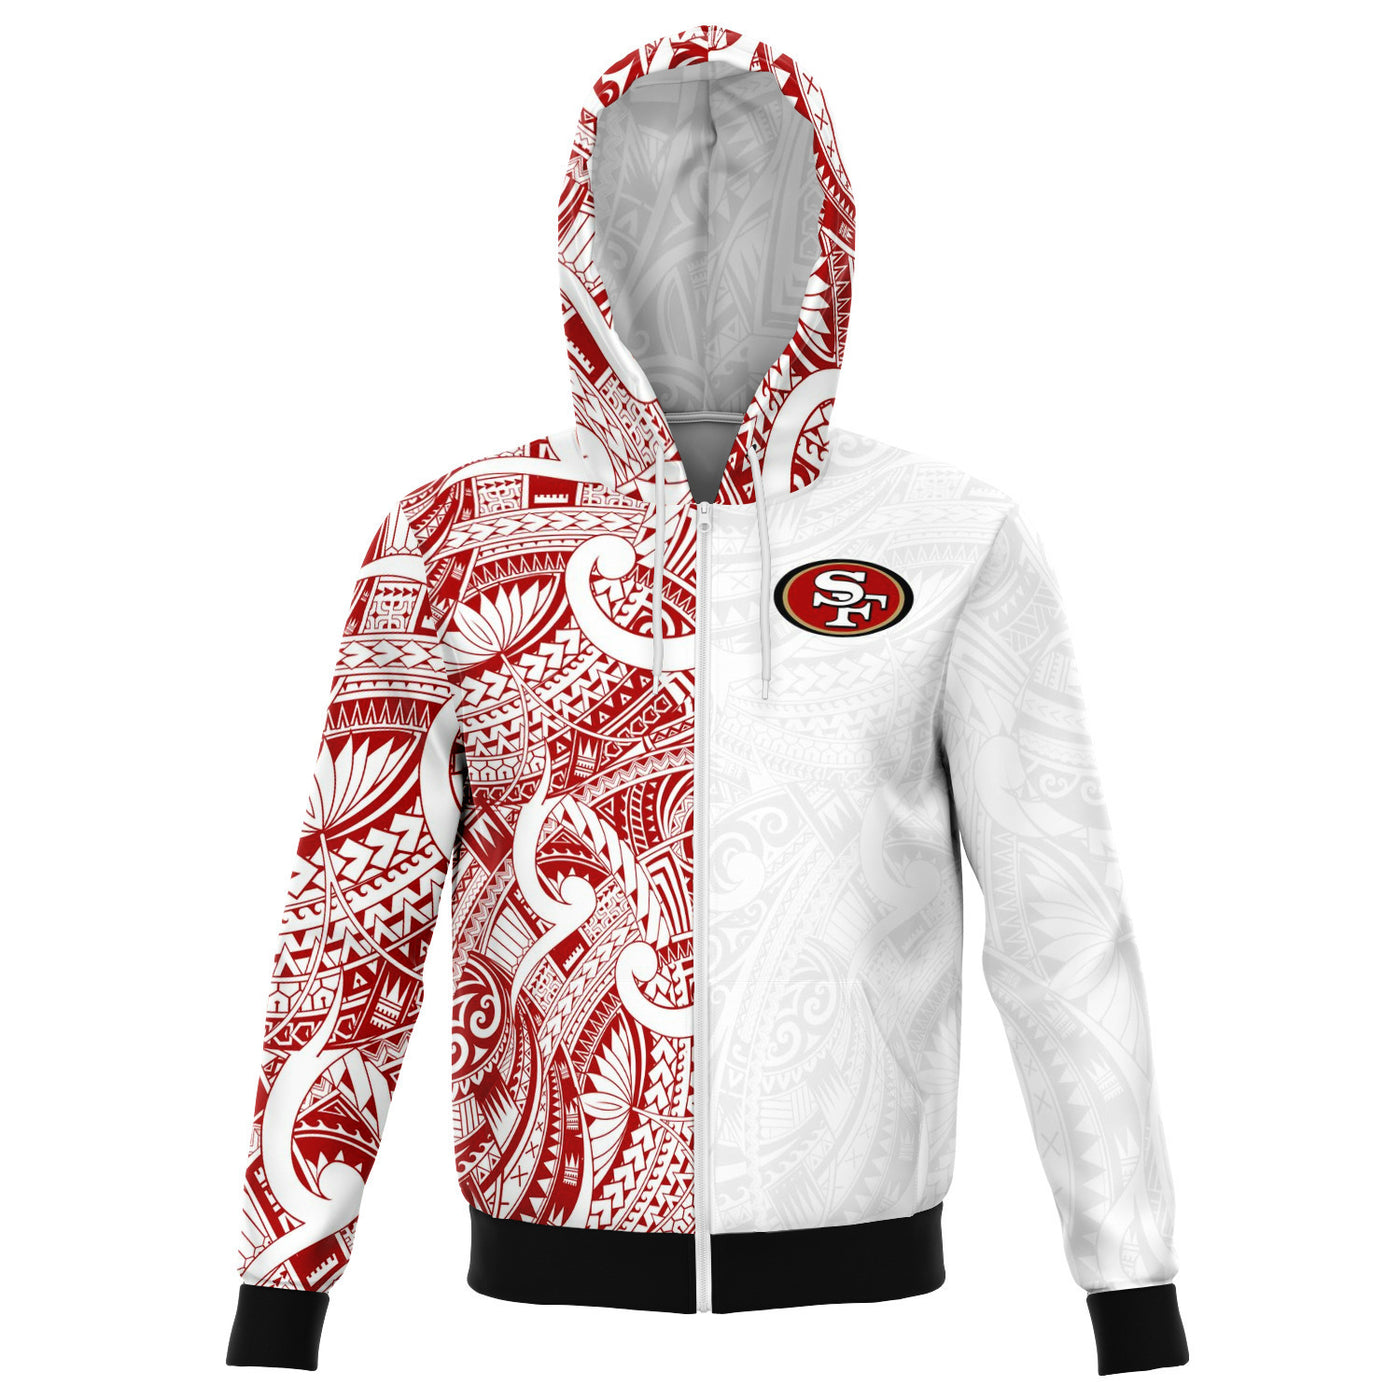 49ers zip up sweater